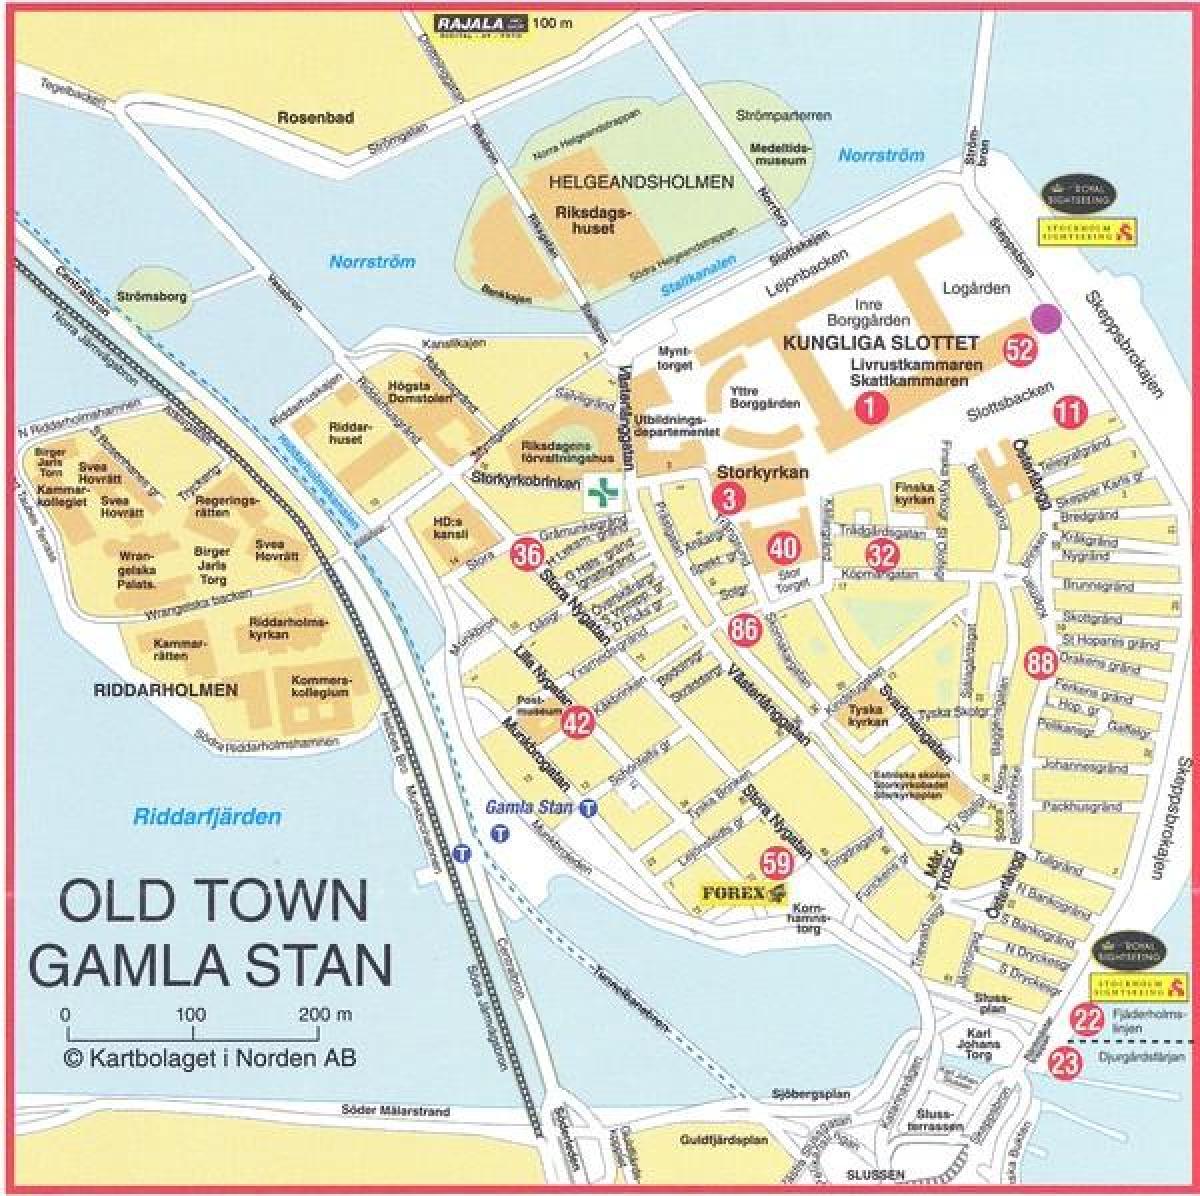 نقشه قدیمی شهر استکهلم سوئد